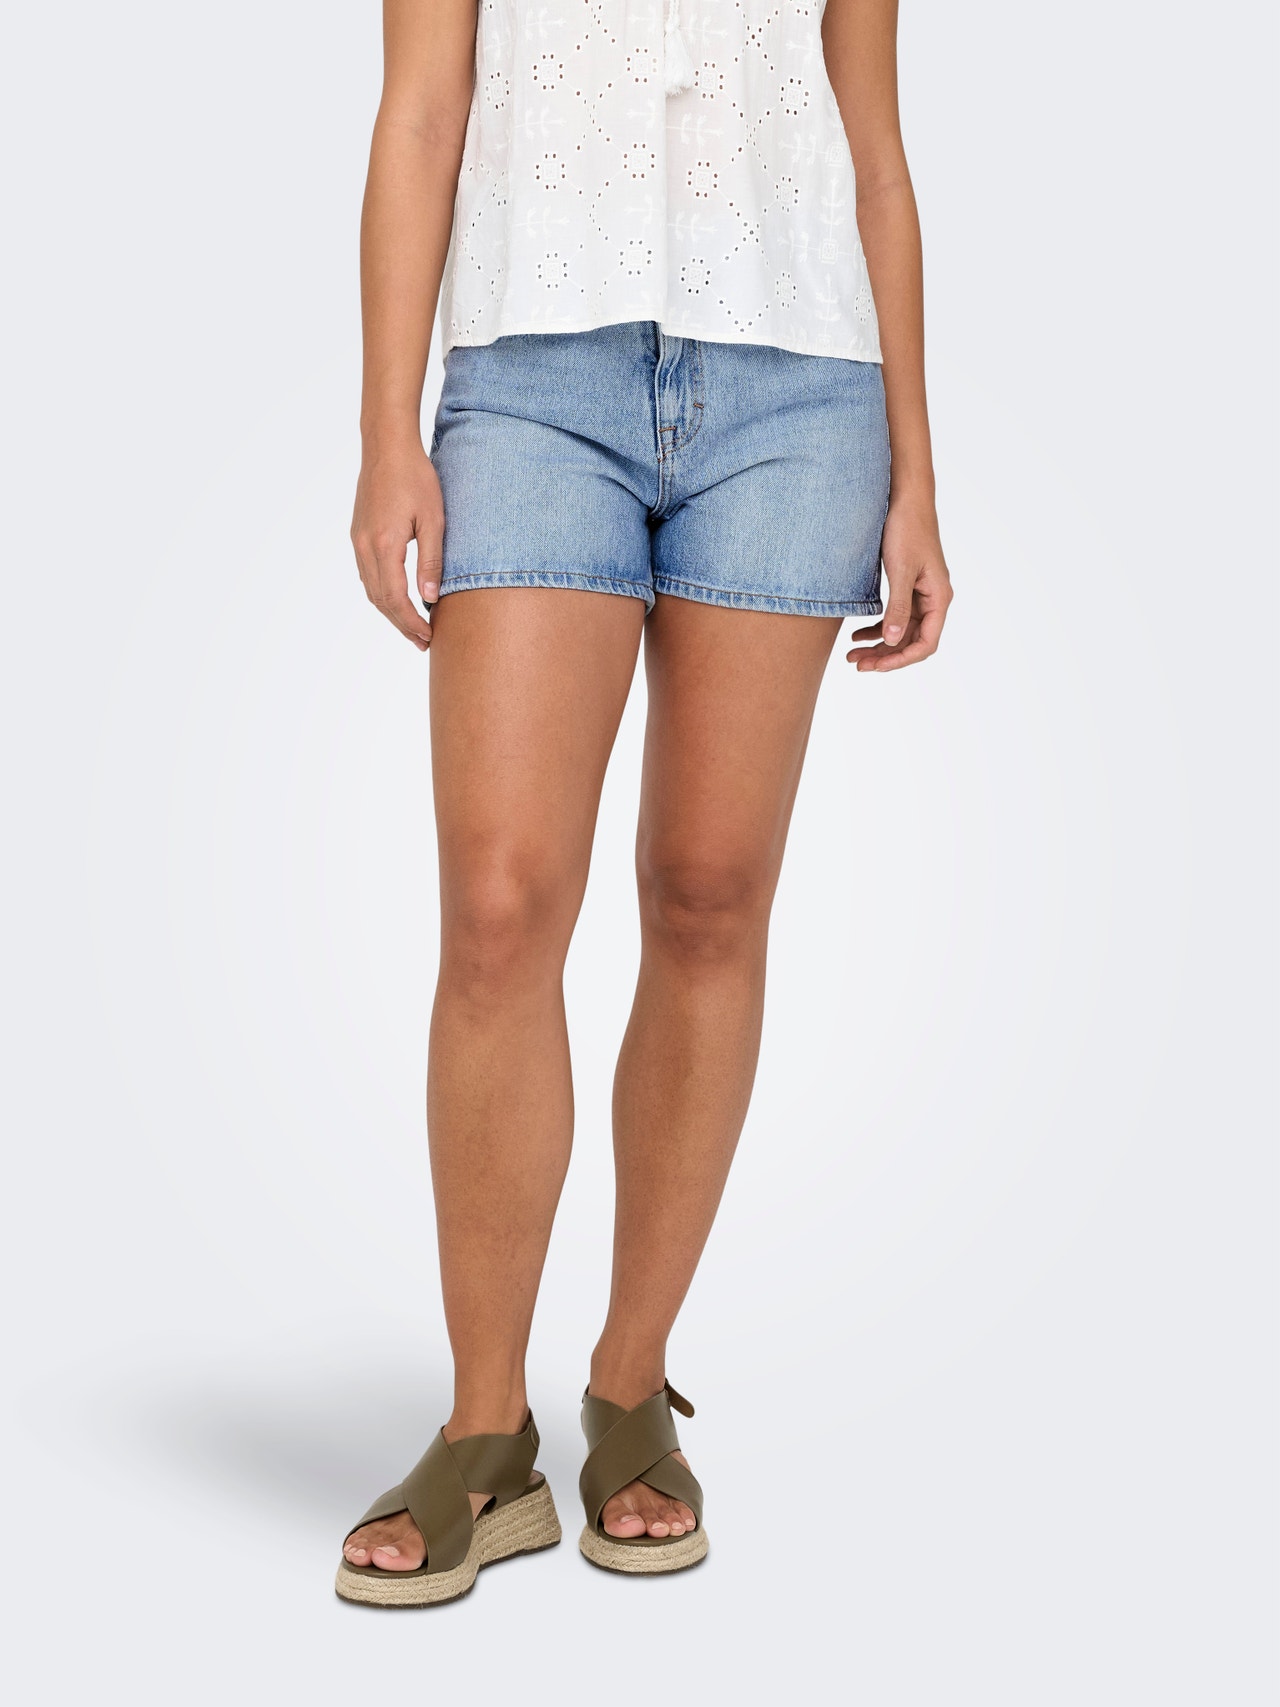 ONLY Short denim shorts with high waist -Light Blue Denim - 15286886